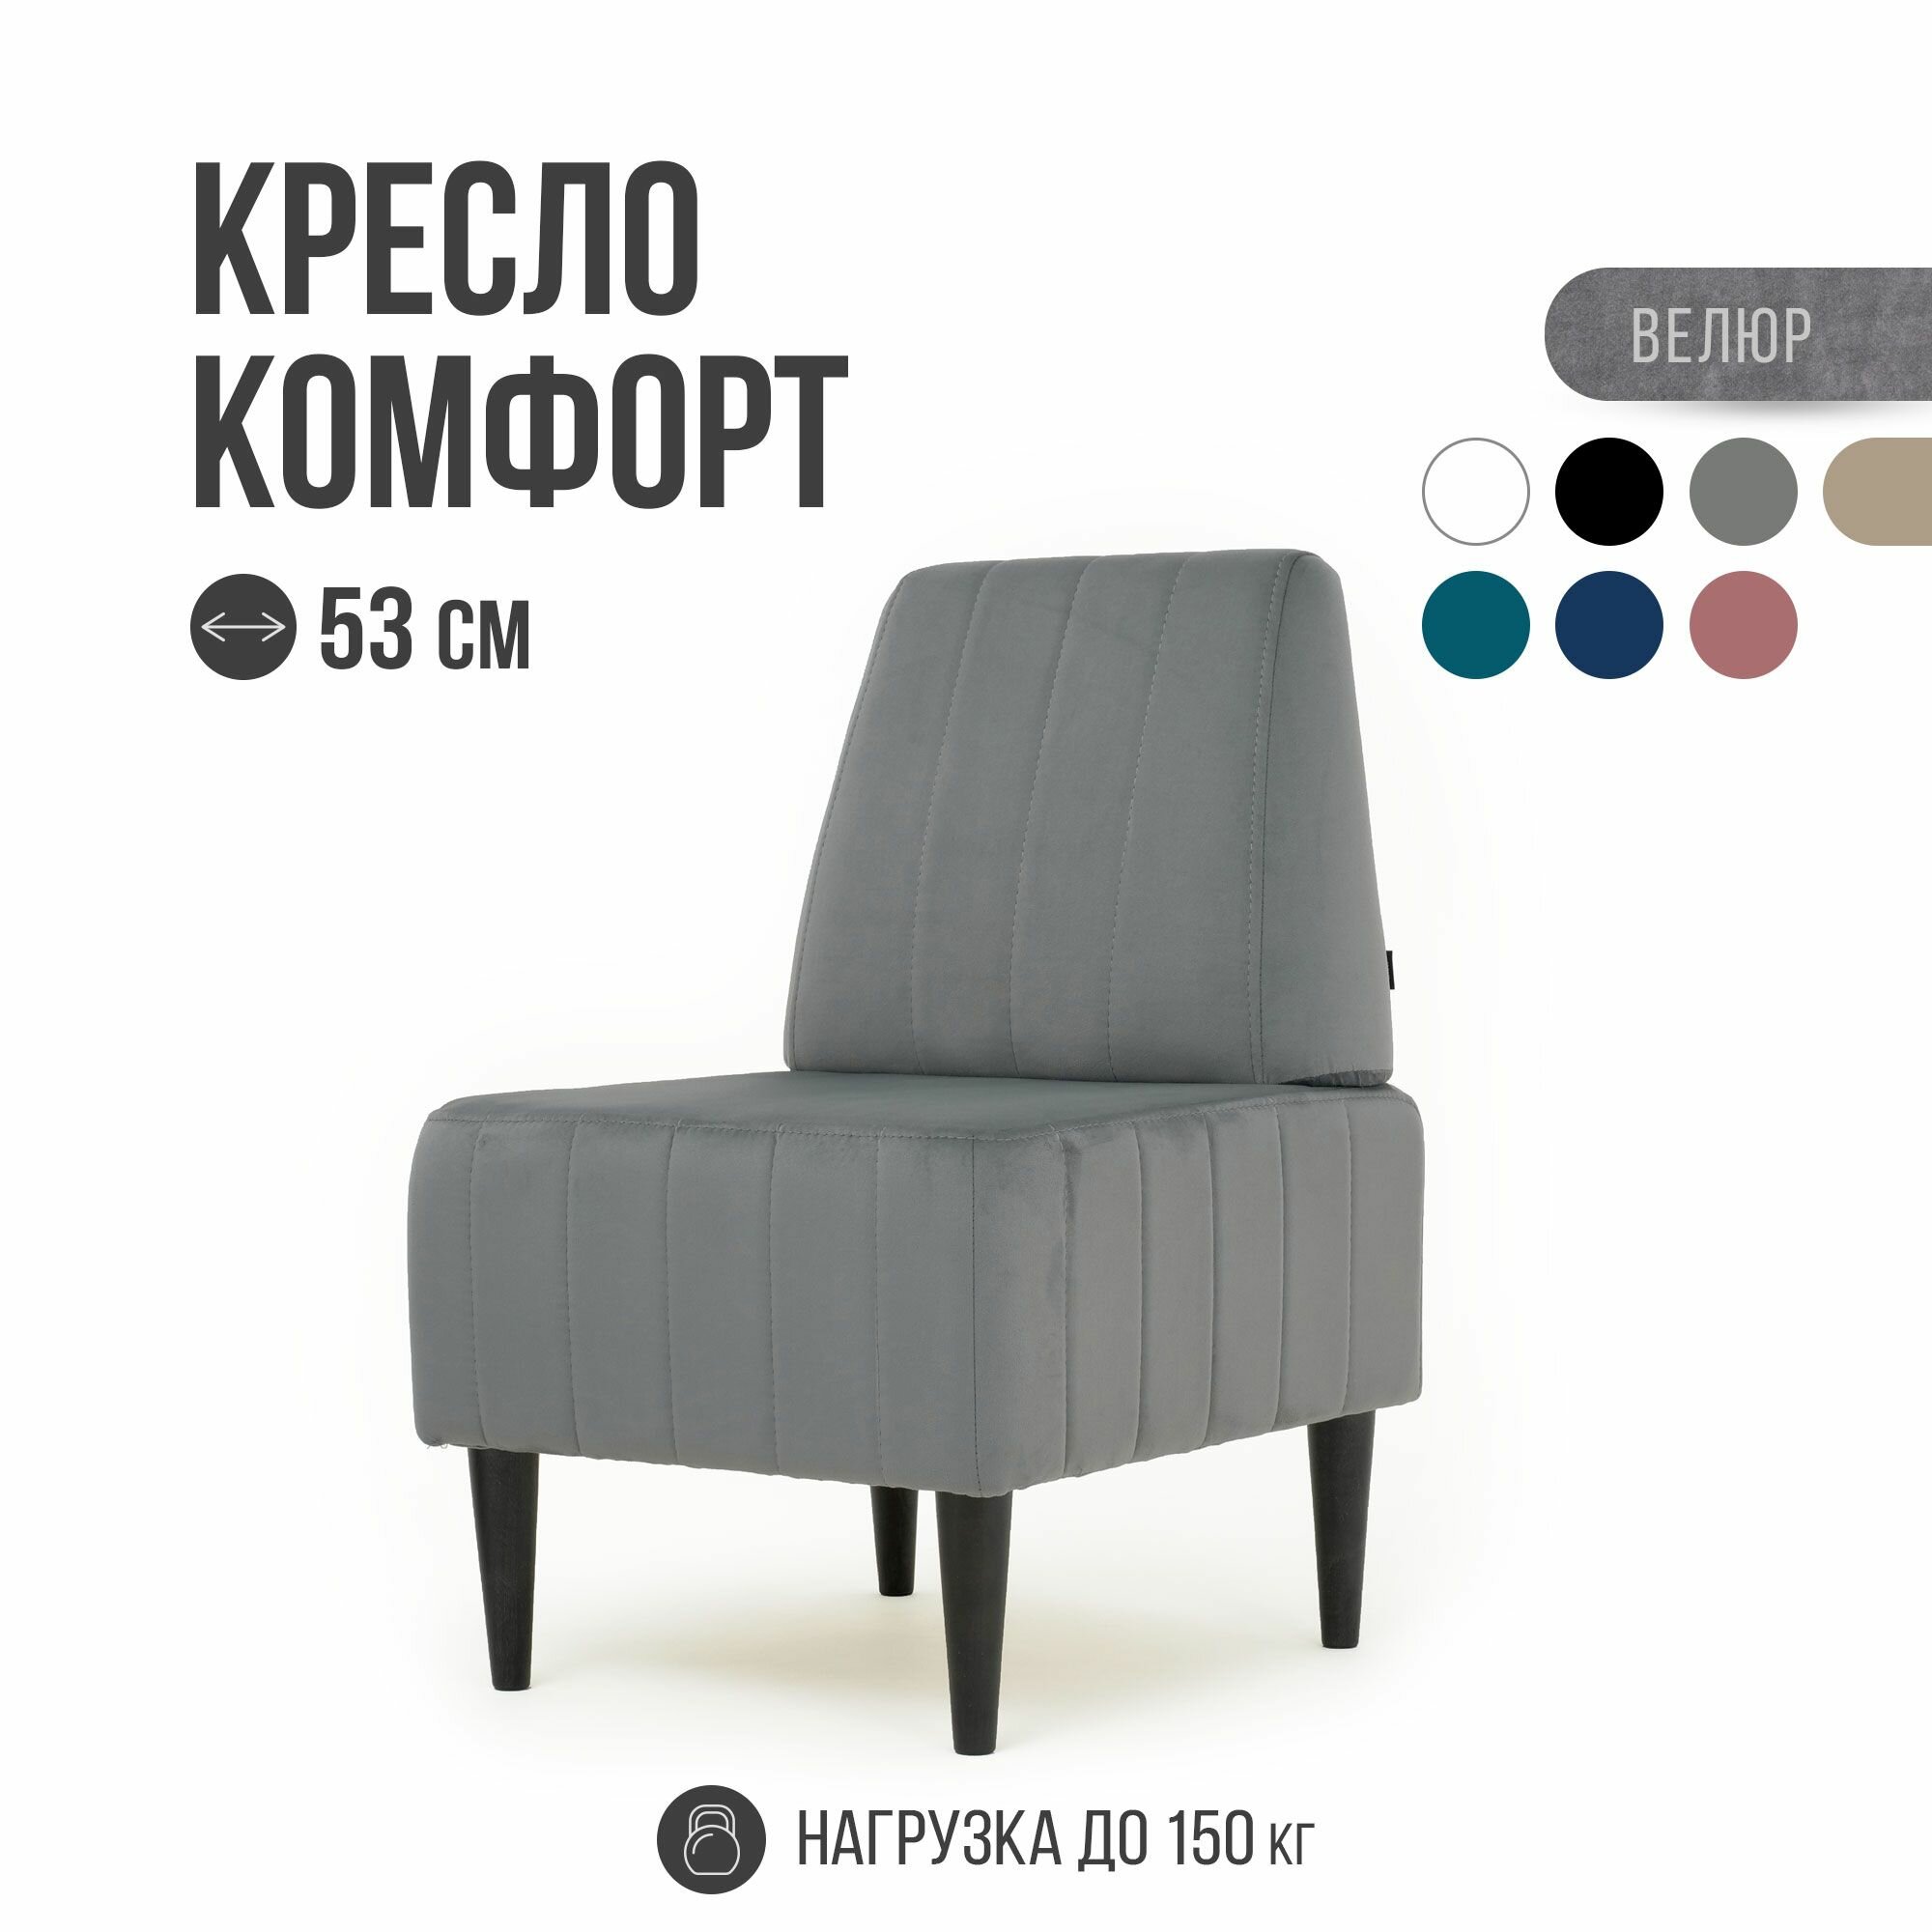 Кресло Комфорт, MVM, 53 см, велюр, серый, черные опоры, 1 шт.